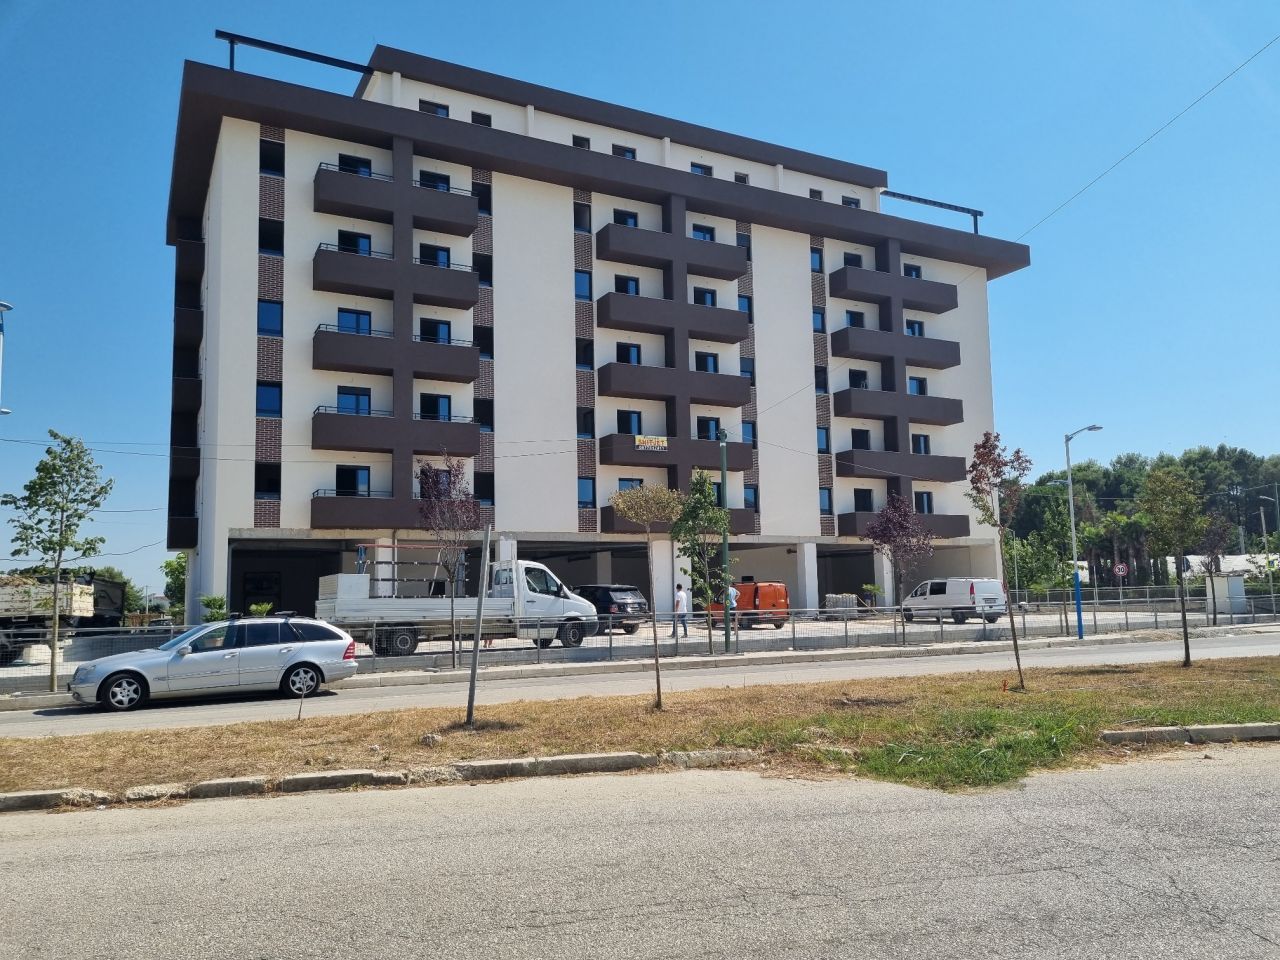 Продается квартира в Мали Робит Голем, Дуррес, Албания, расположенная в тихом районе, недалеко от пляжа